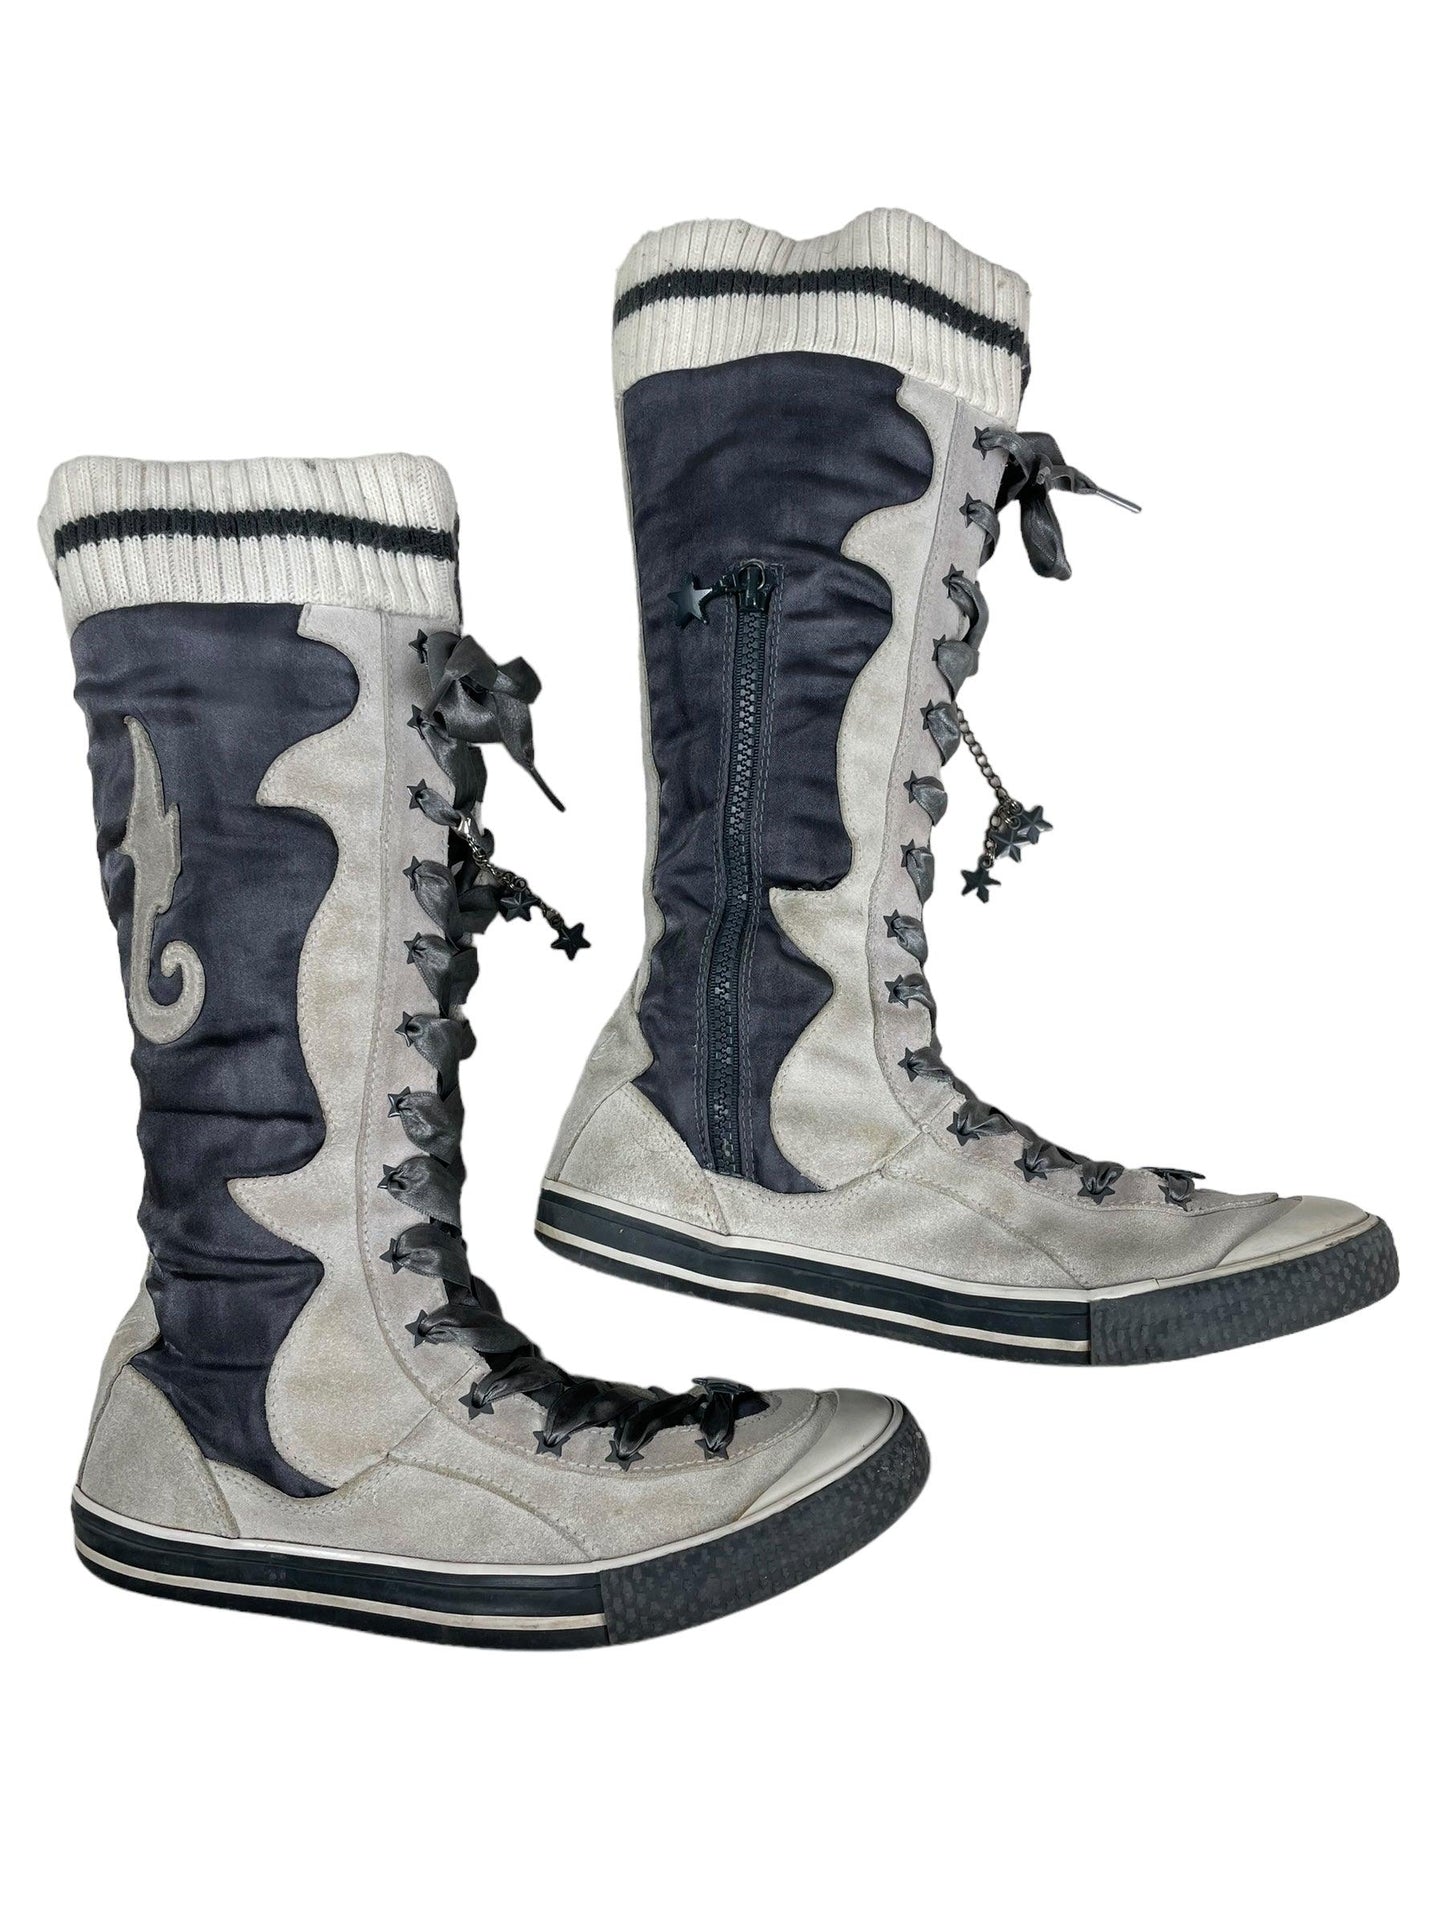 Diesel c.2007 ‘Pop Star’ boots - Known Source